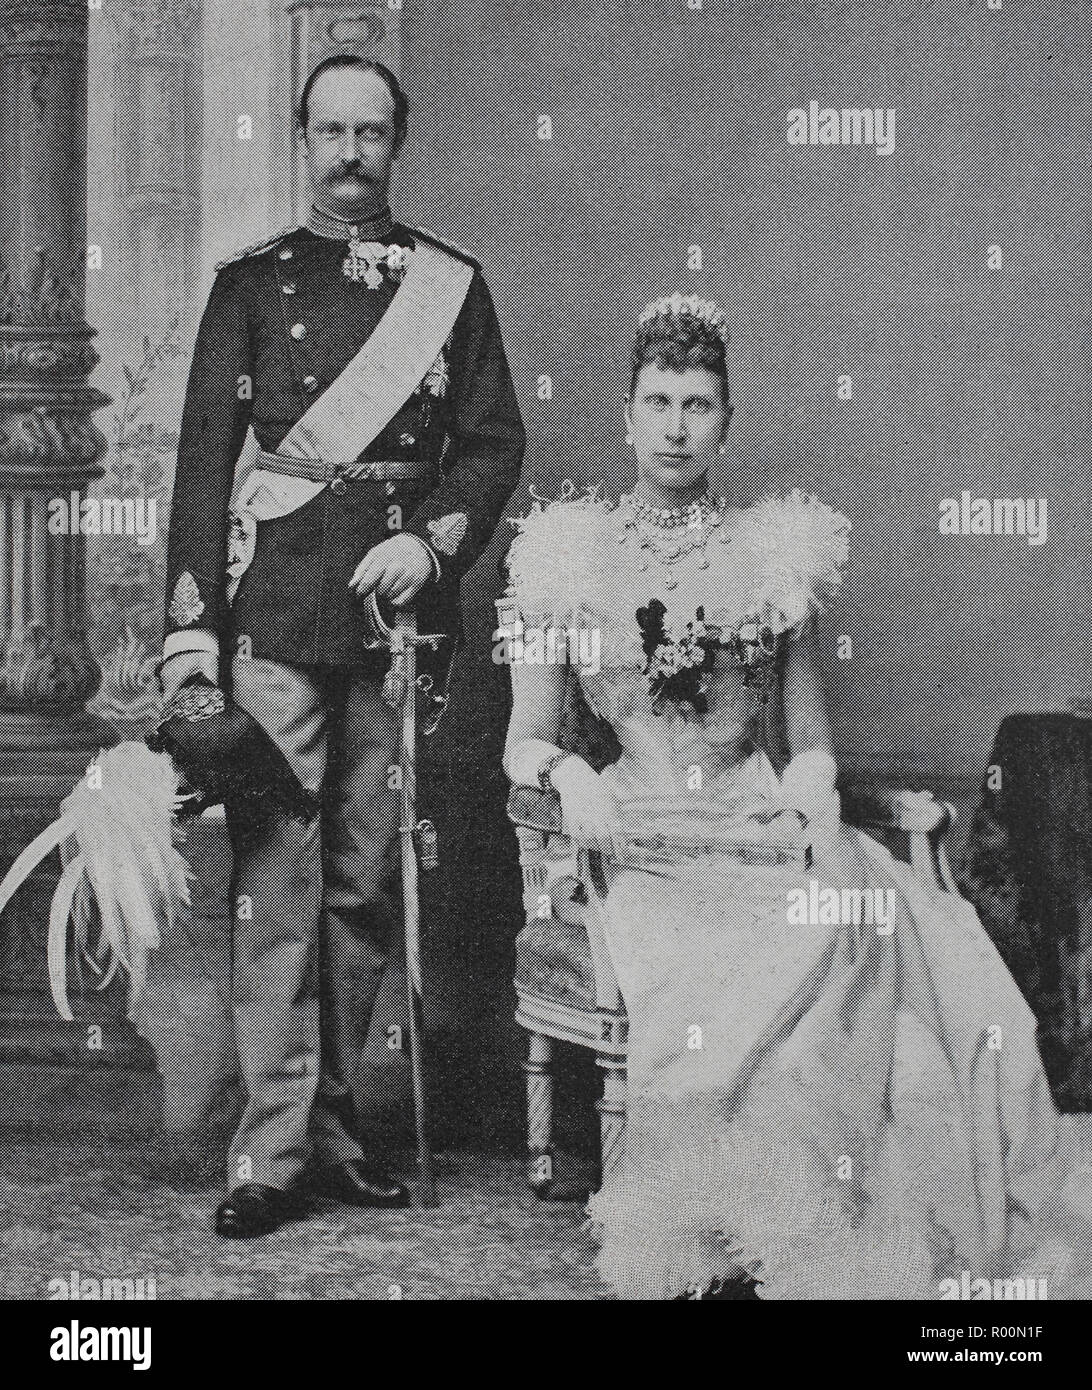 Digital verbesserte Reproduktion, Friedrich VIII, 1843 - 1912, wurde König von Dänemark von 1906 bis 1912 und Louise von Schweden, Louise Josephine Eugenie, 1851-1926, Königin von Dänemark war, die ursprüngliche Drucken aus dem Jahr 1899 Stockfoto